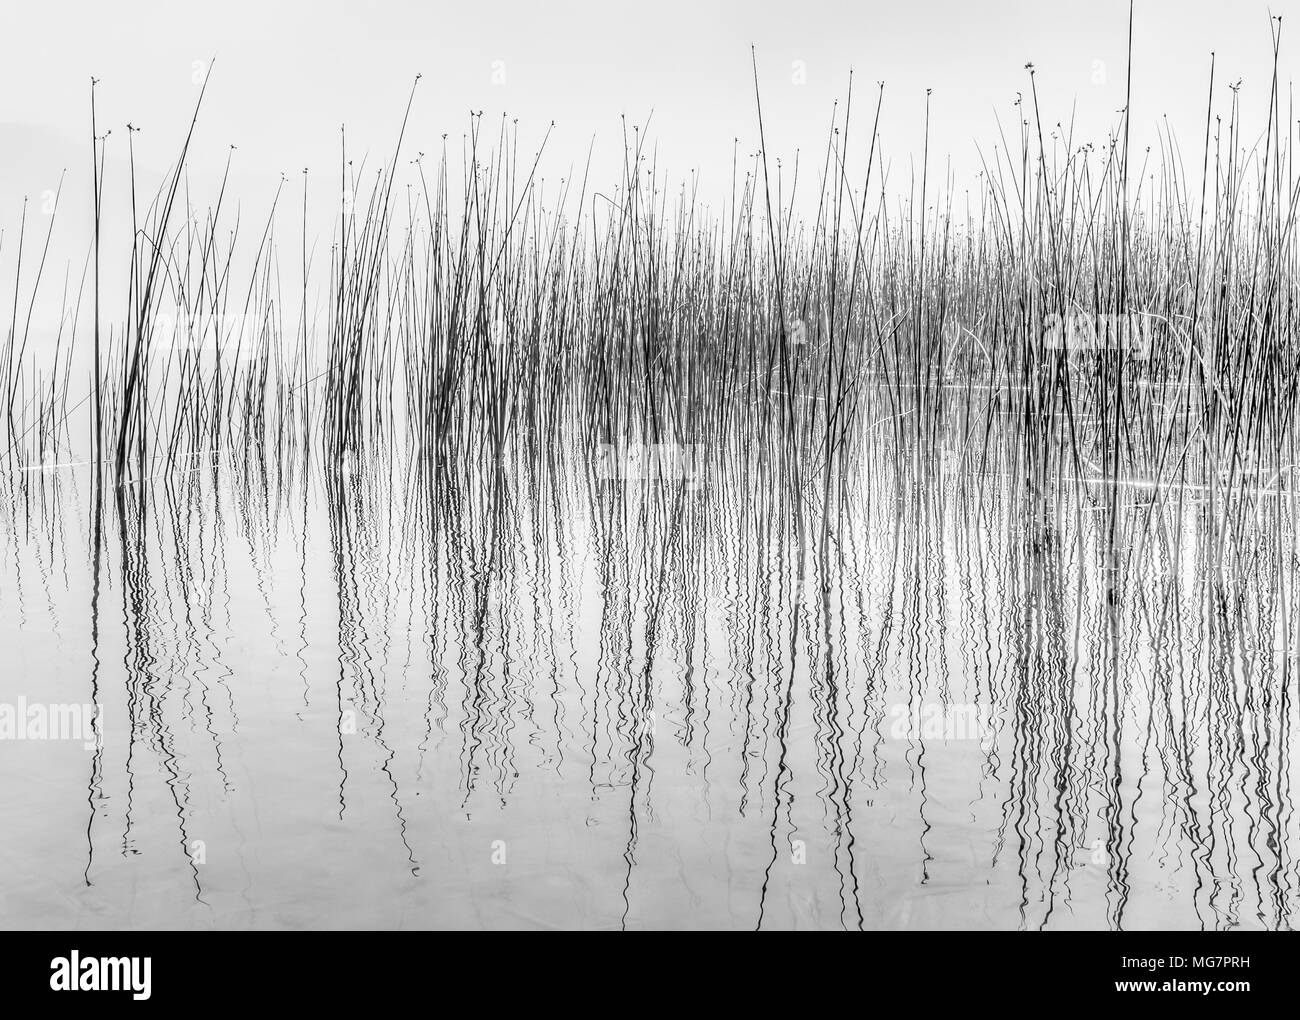 Immagine in bianco e nero di lamelle riflettenti in acqua lungo la riva del lago che assomiglia a una lettura da un sismografo. Foto Stock